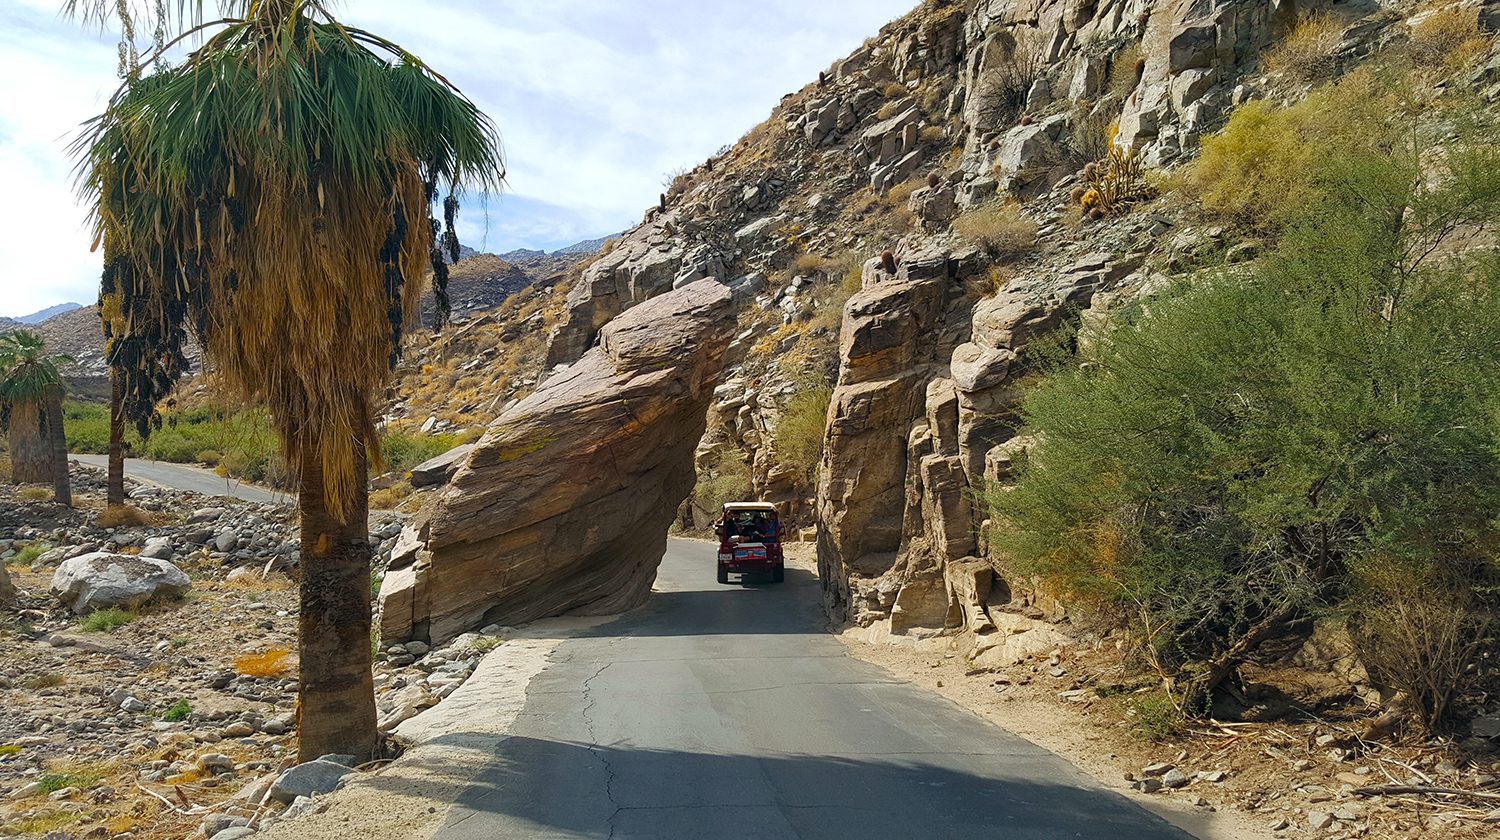 Palm Canyon road through rock